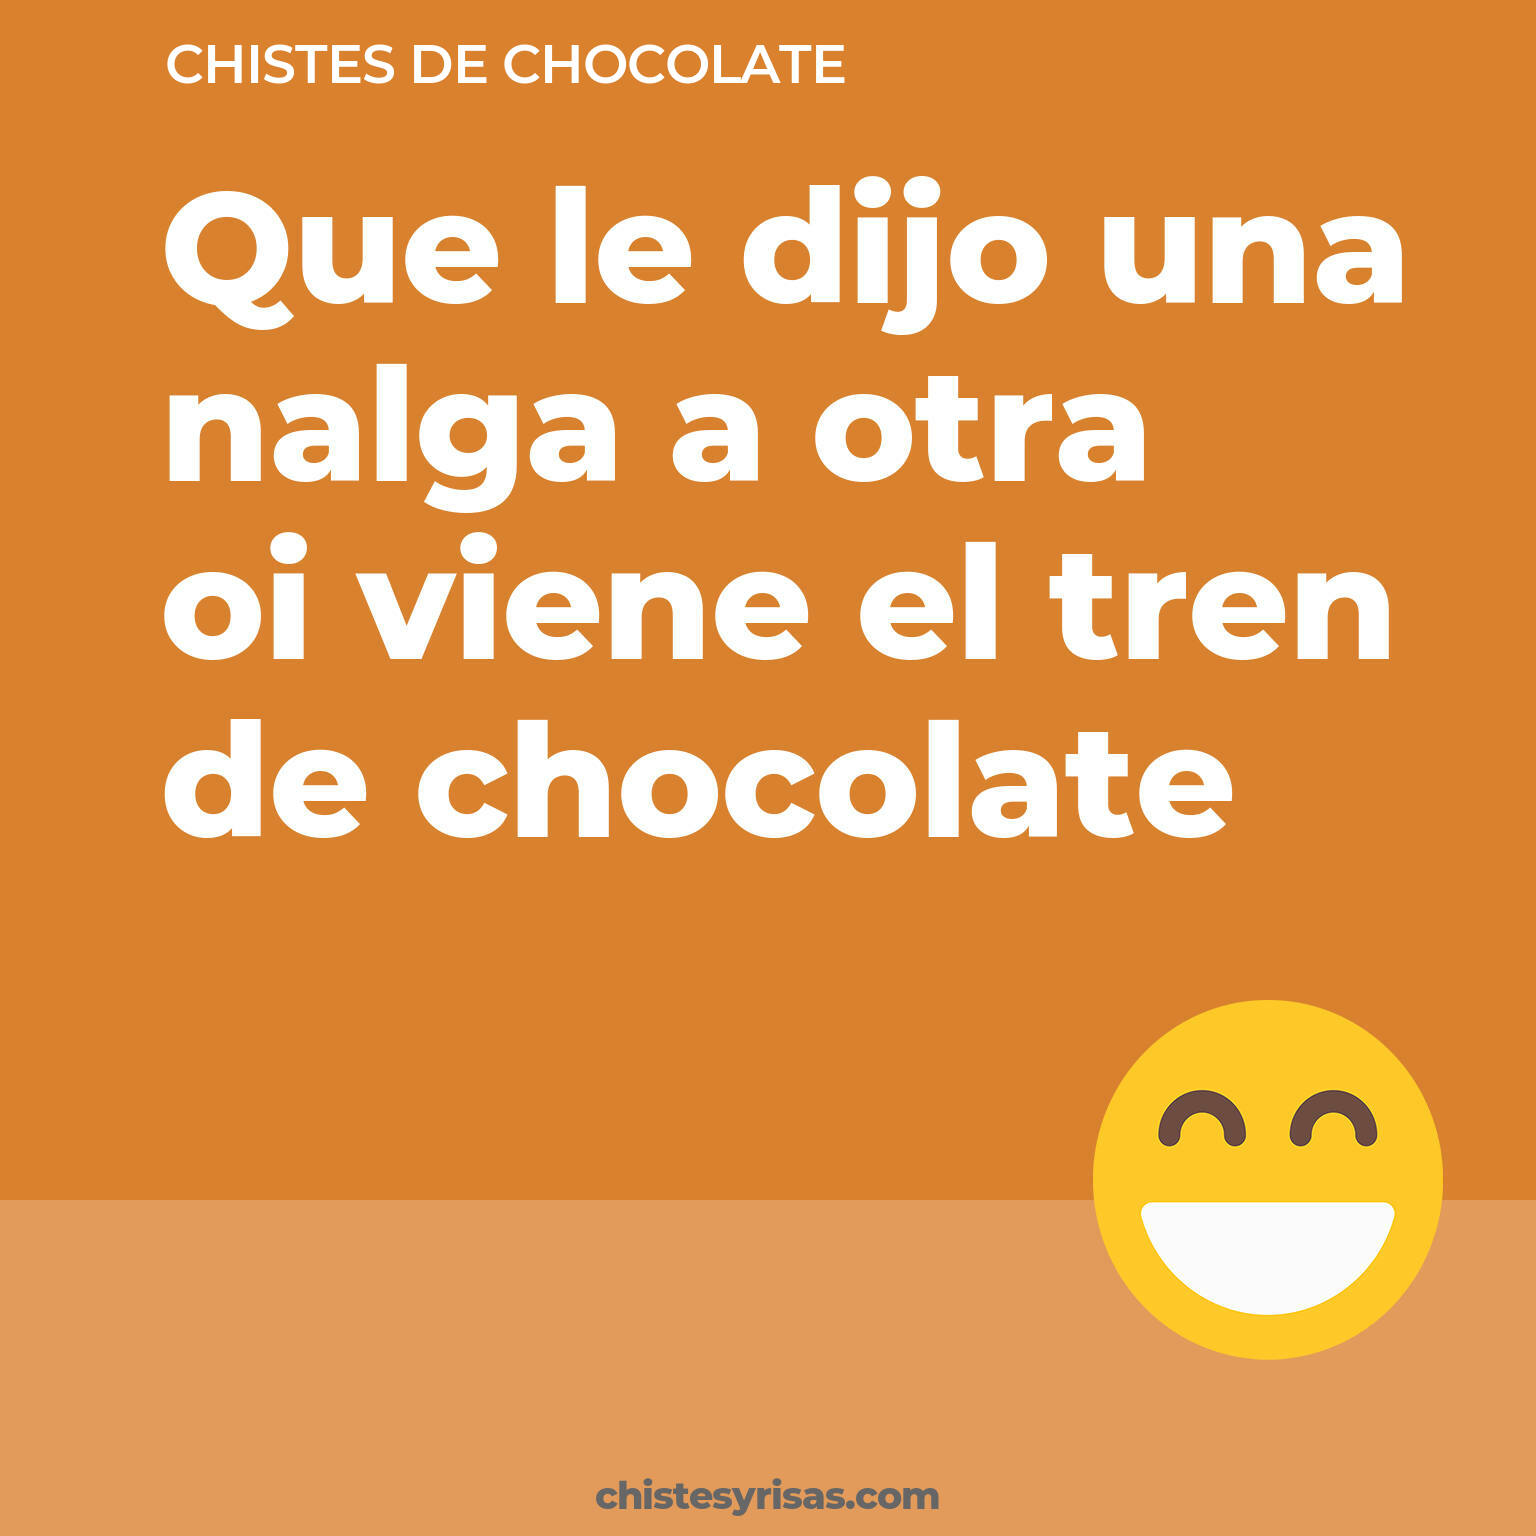 chistes de Chocolate buenos